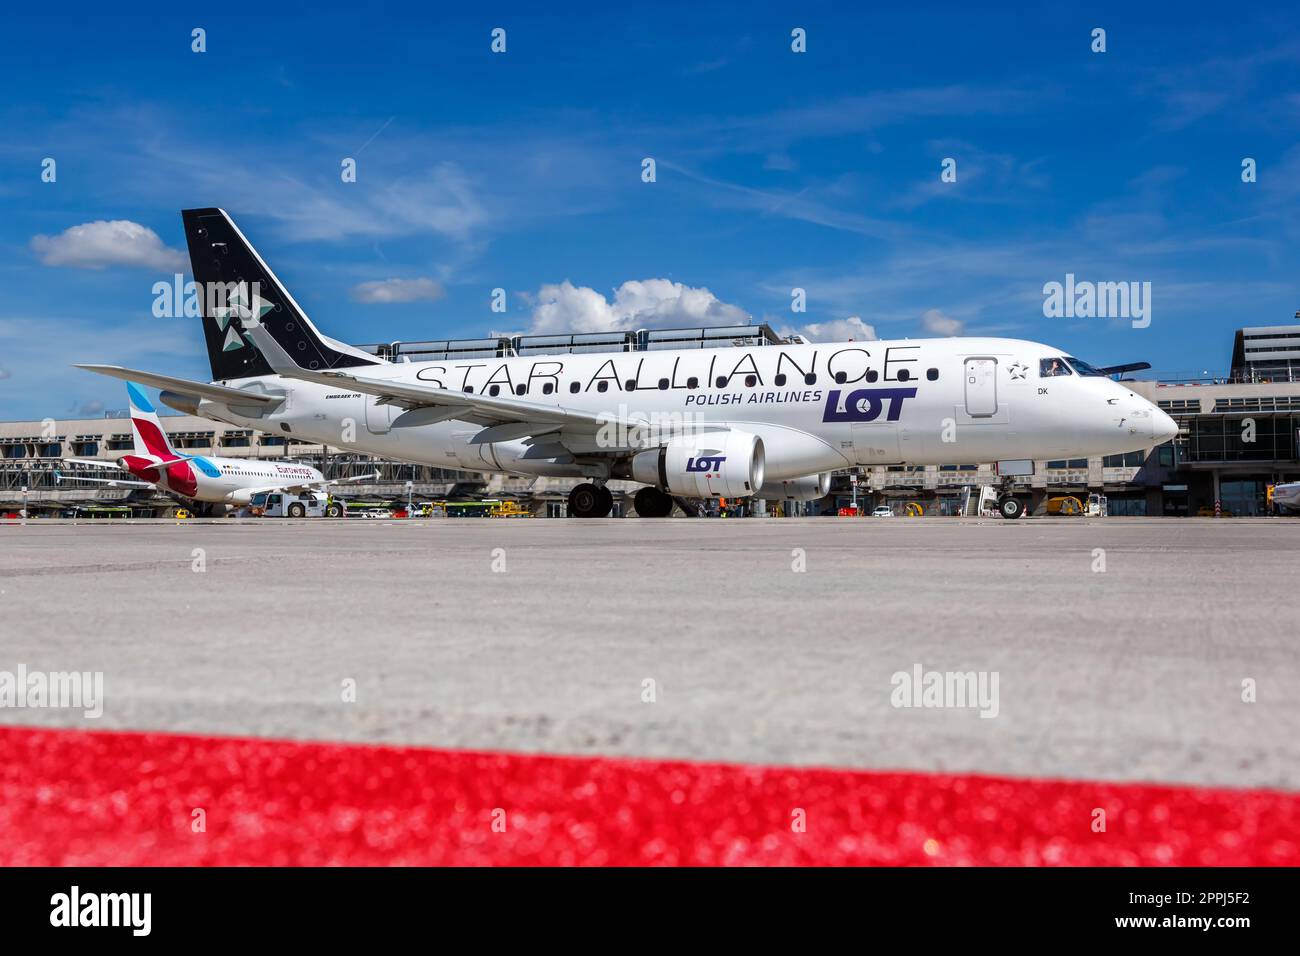 LOT Polish Airlines Embraer 170 aeroplano aeroporto di Stoccarda in Germania colori speciali Star Alliance Foto Stock